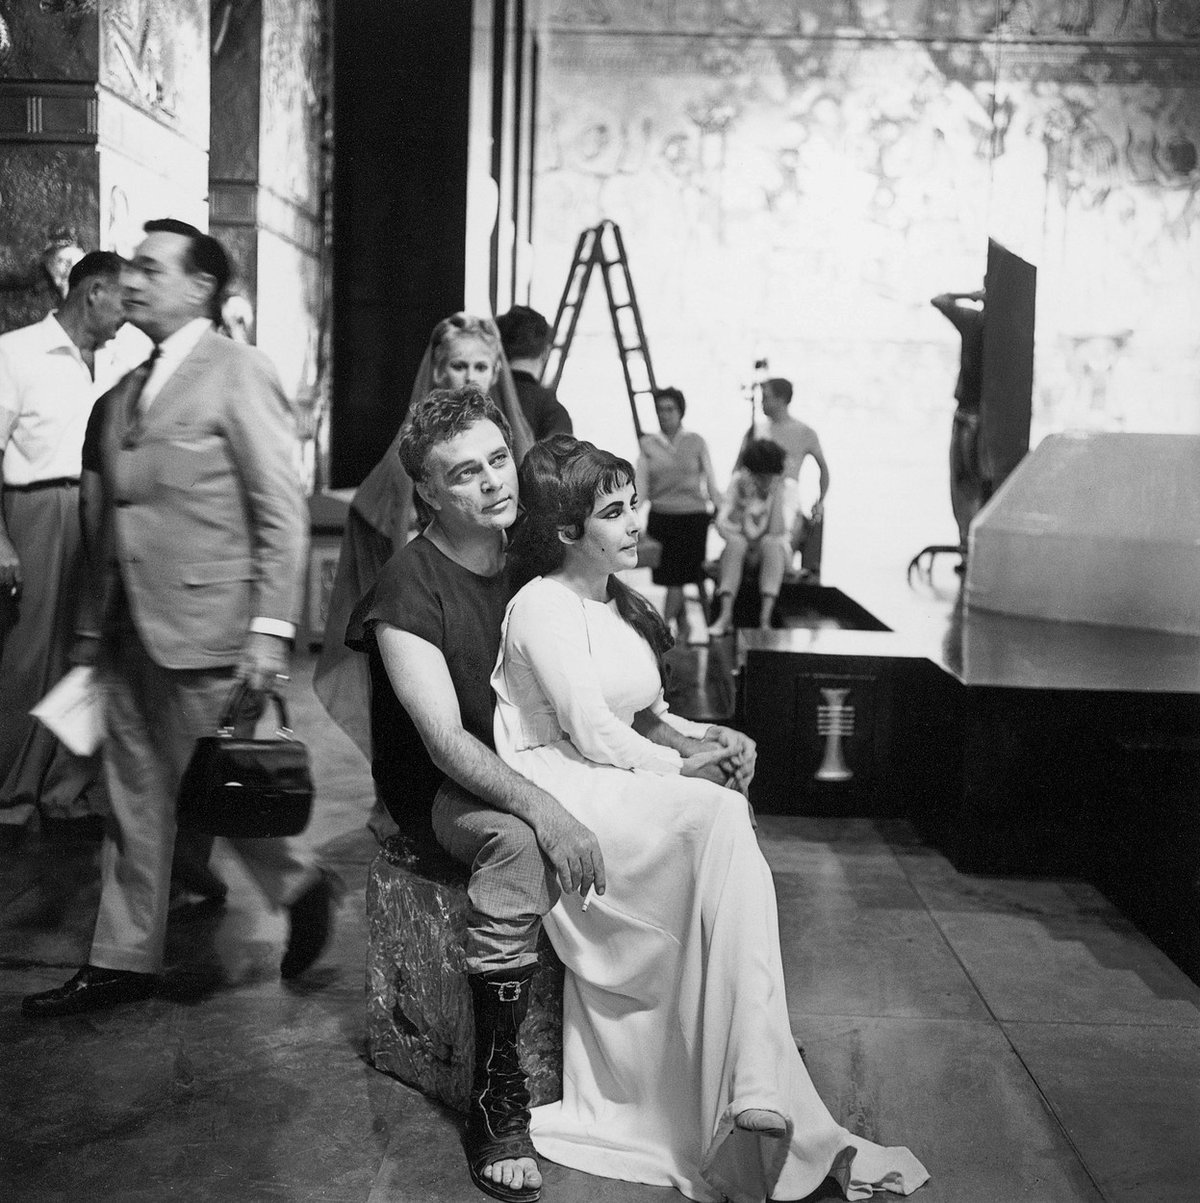   Momentka z natáčení filmu Cleopatra. S Richardem Burtonem vypadají jak milenci.